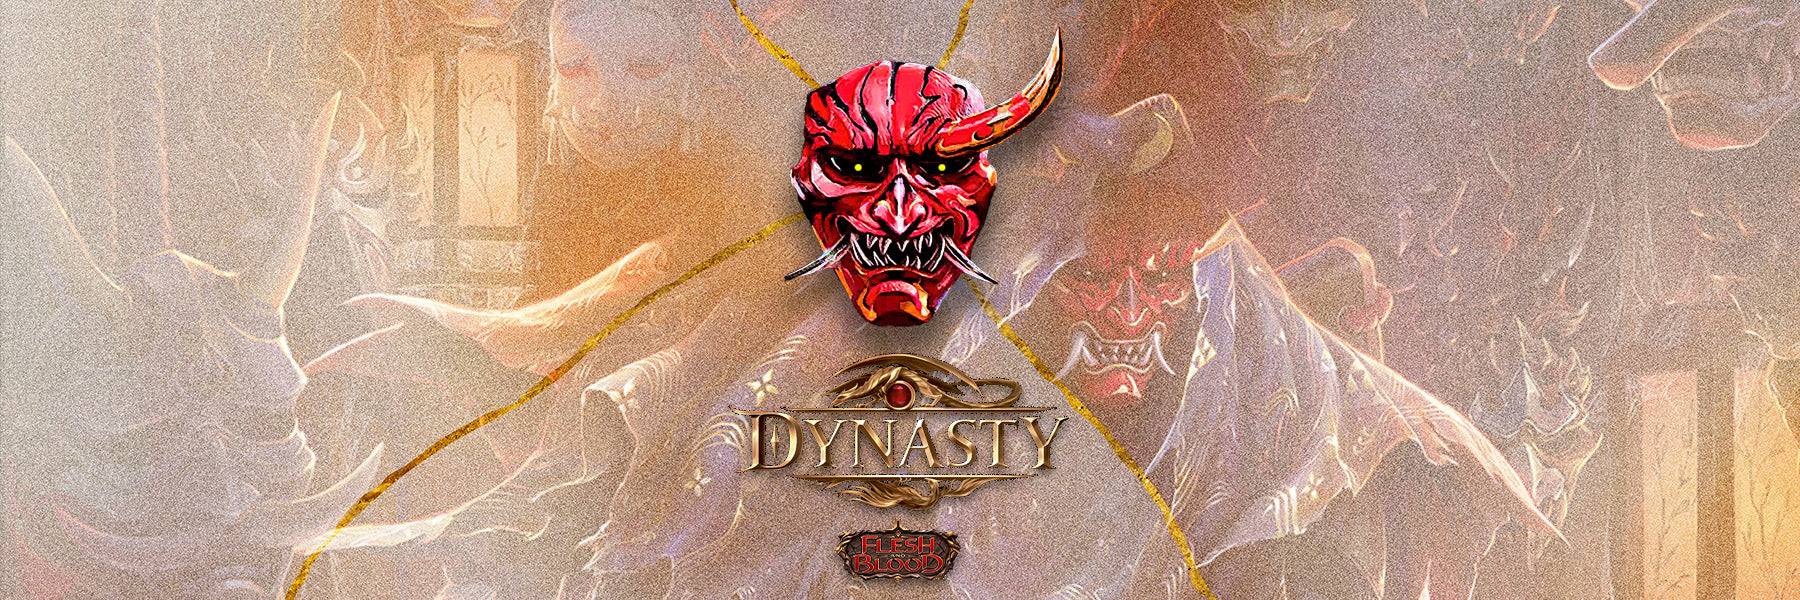 Dynasty - Guardian Games LLC